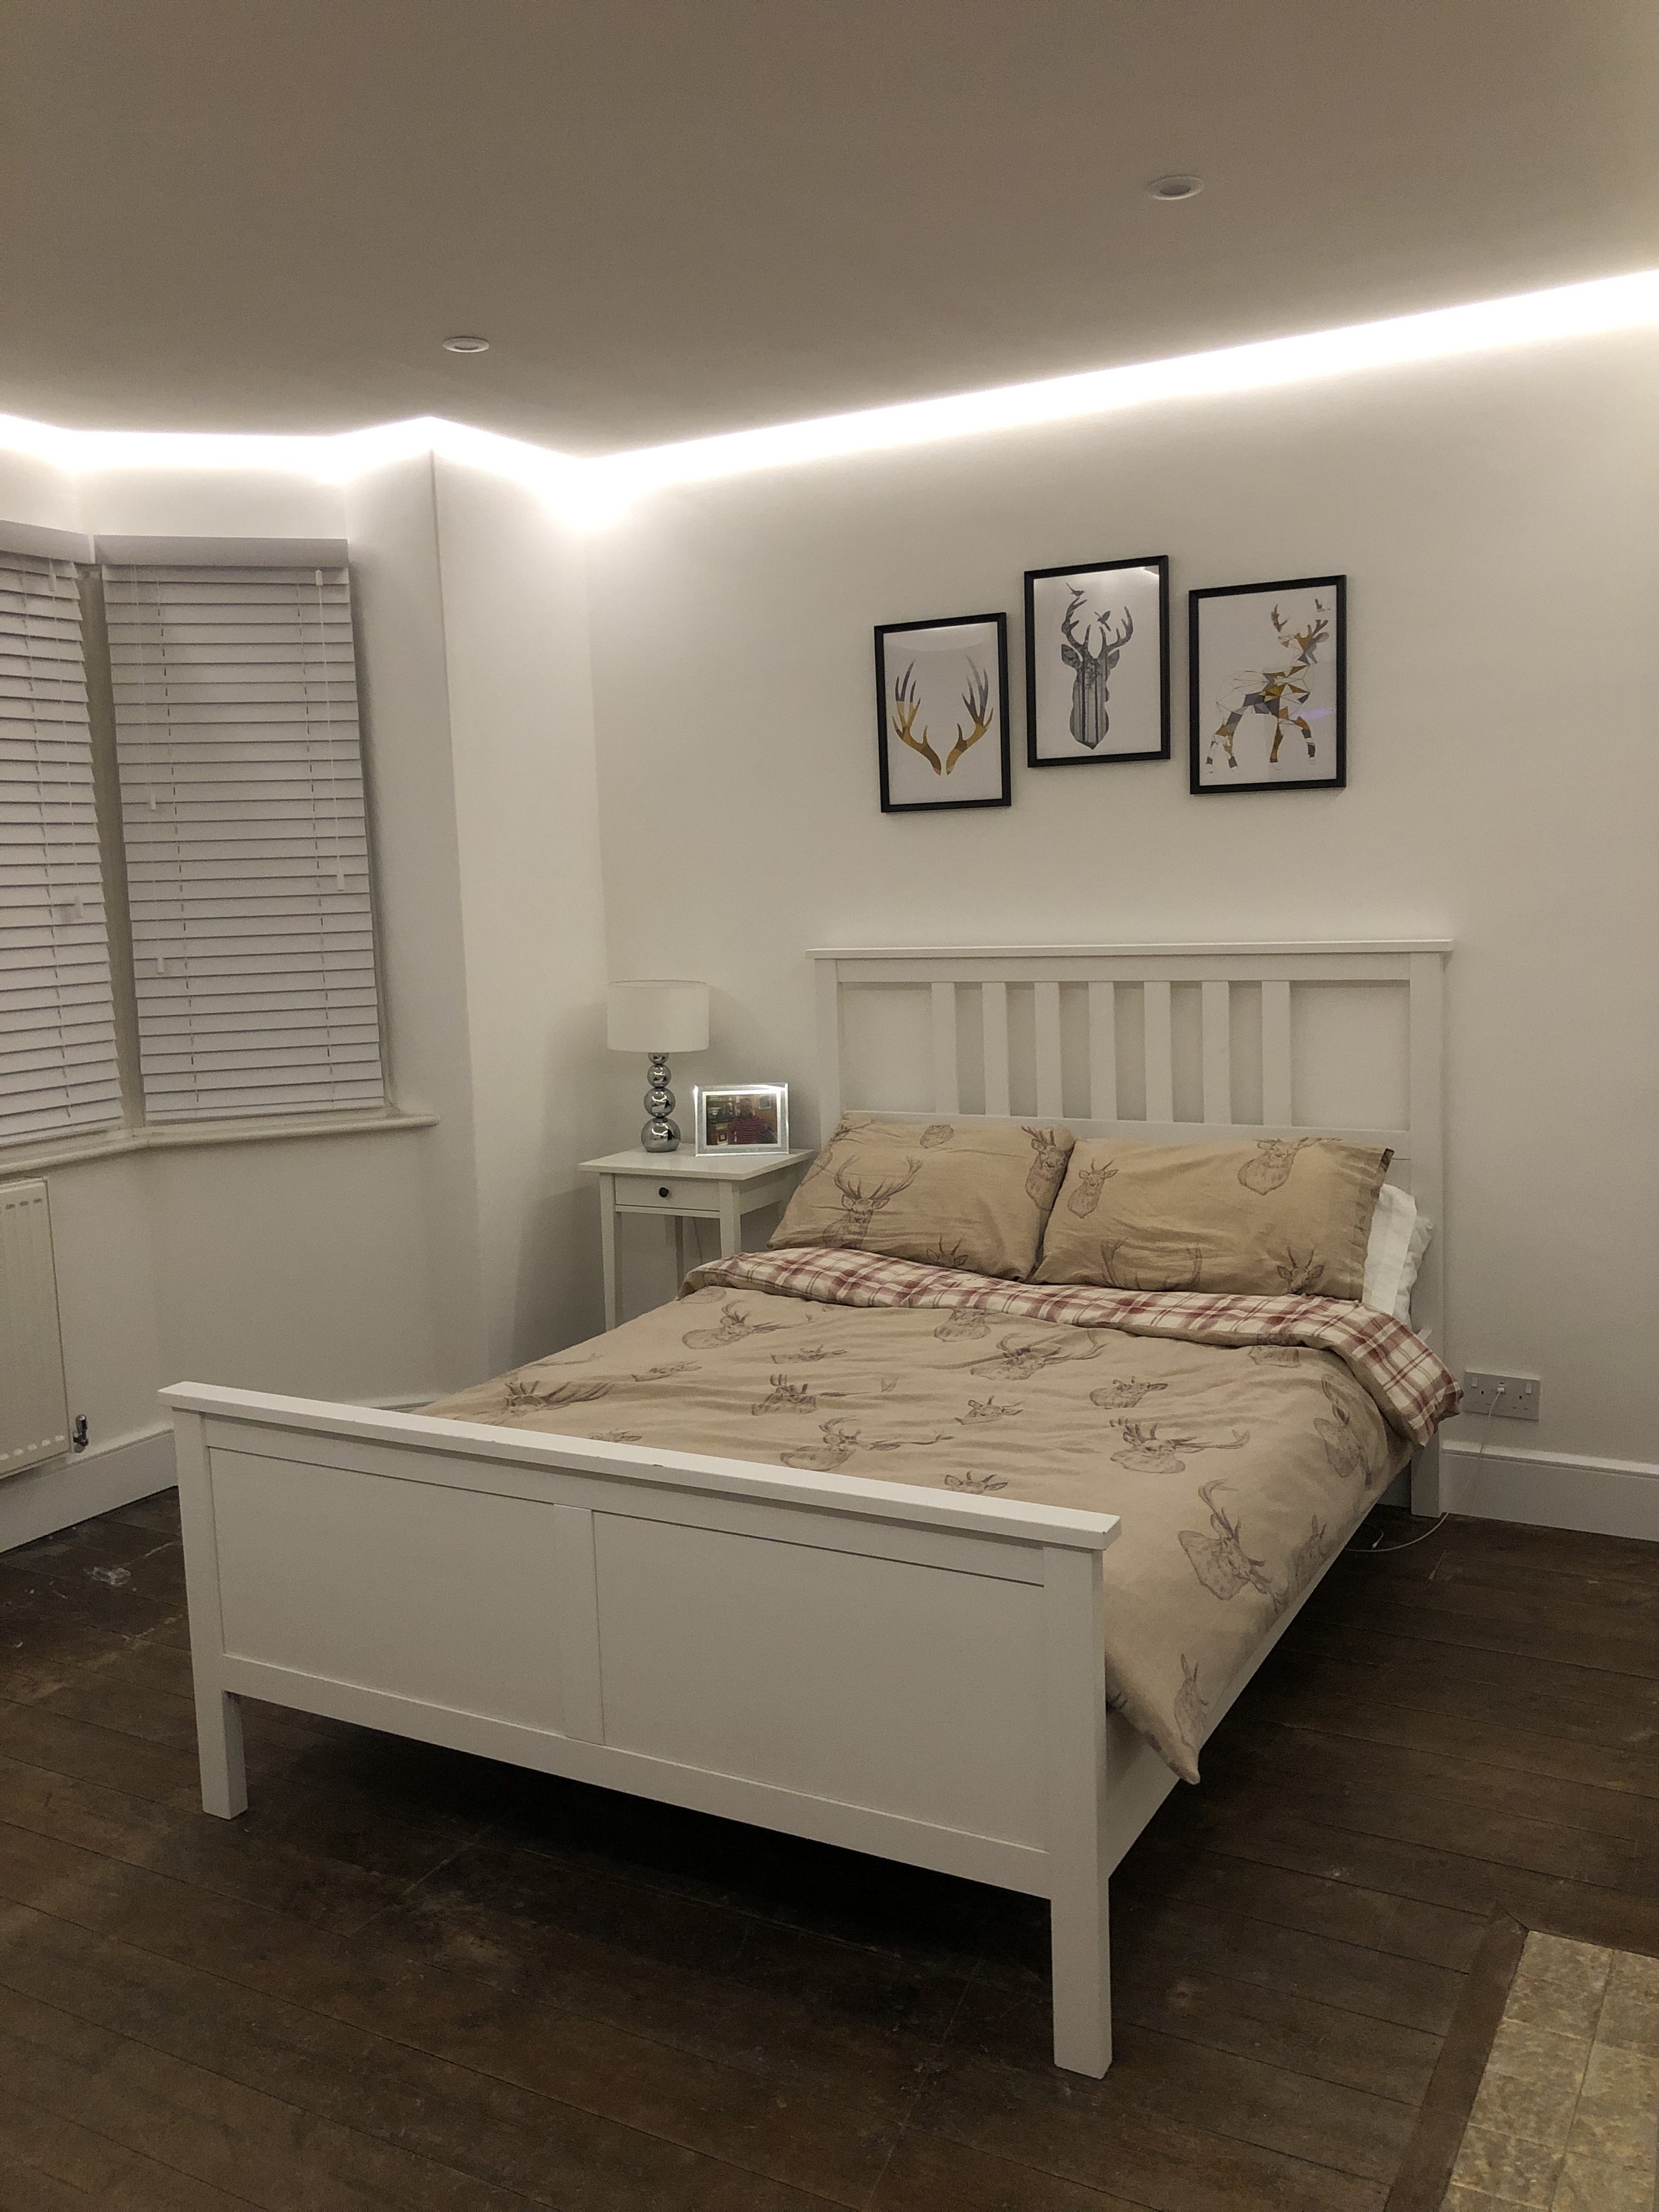 led light strip for bedroom ceiling